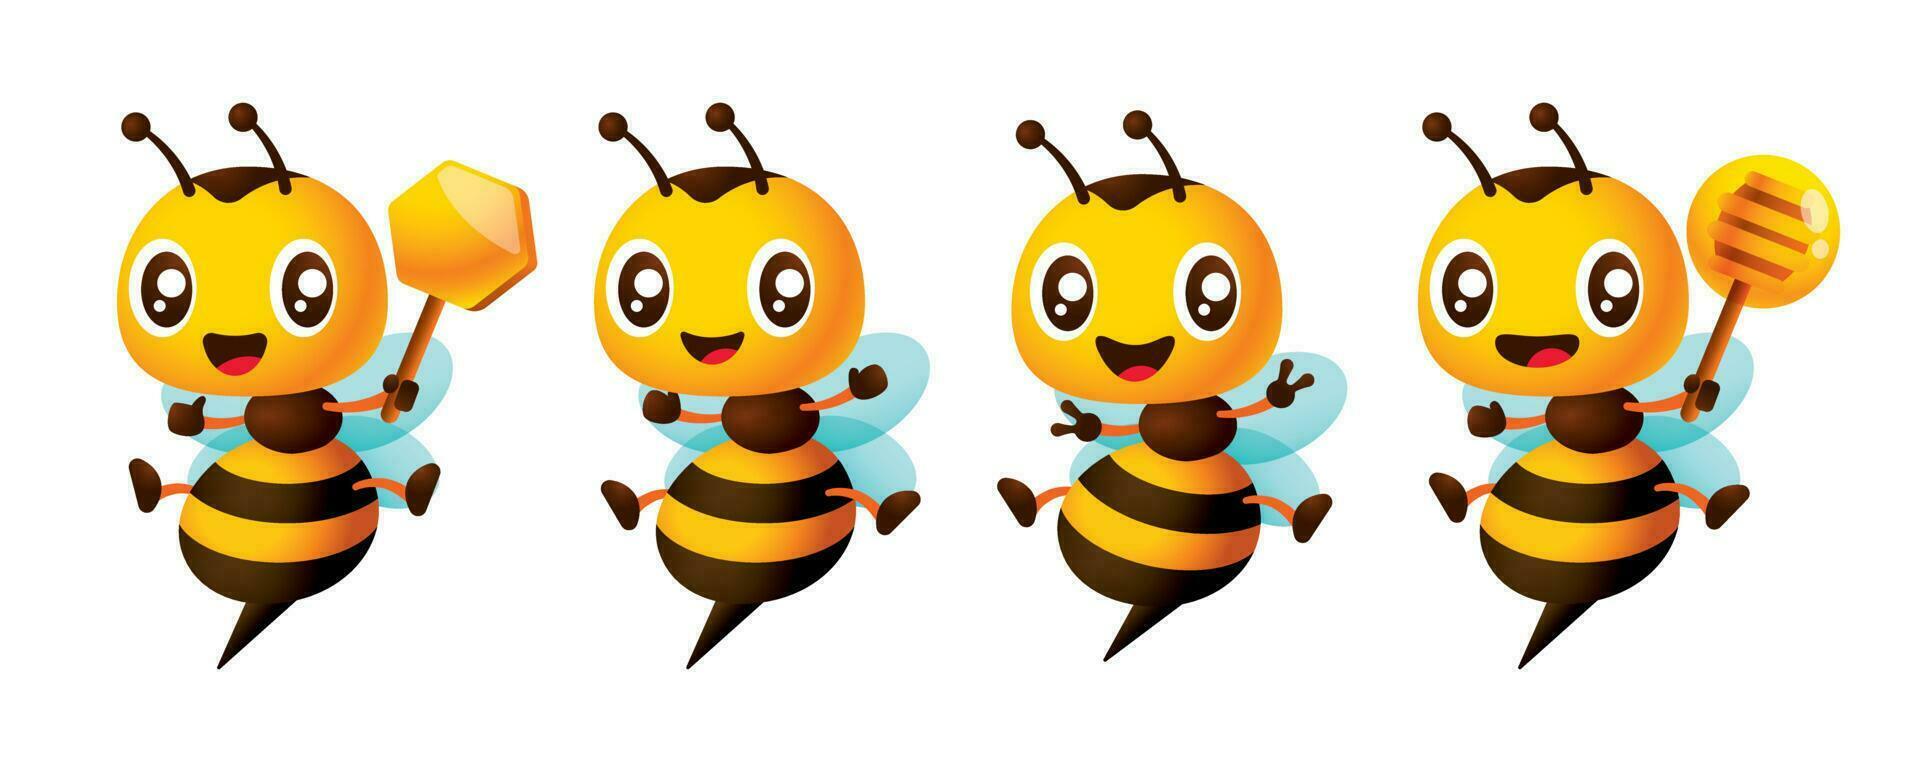 dibujos animados linda abeja con diferente poses mascota conjunto participación panal, miel cazo y victoria firmar gesto vector ilustración coleccion